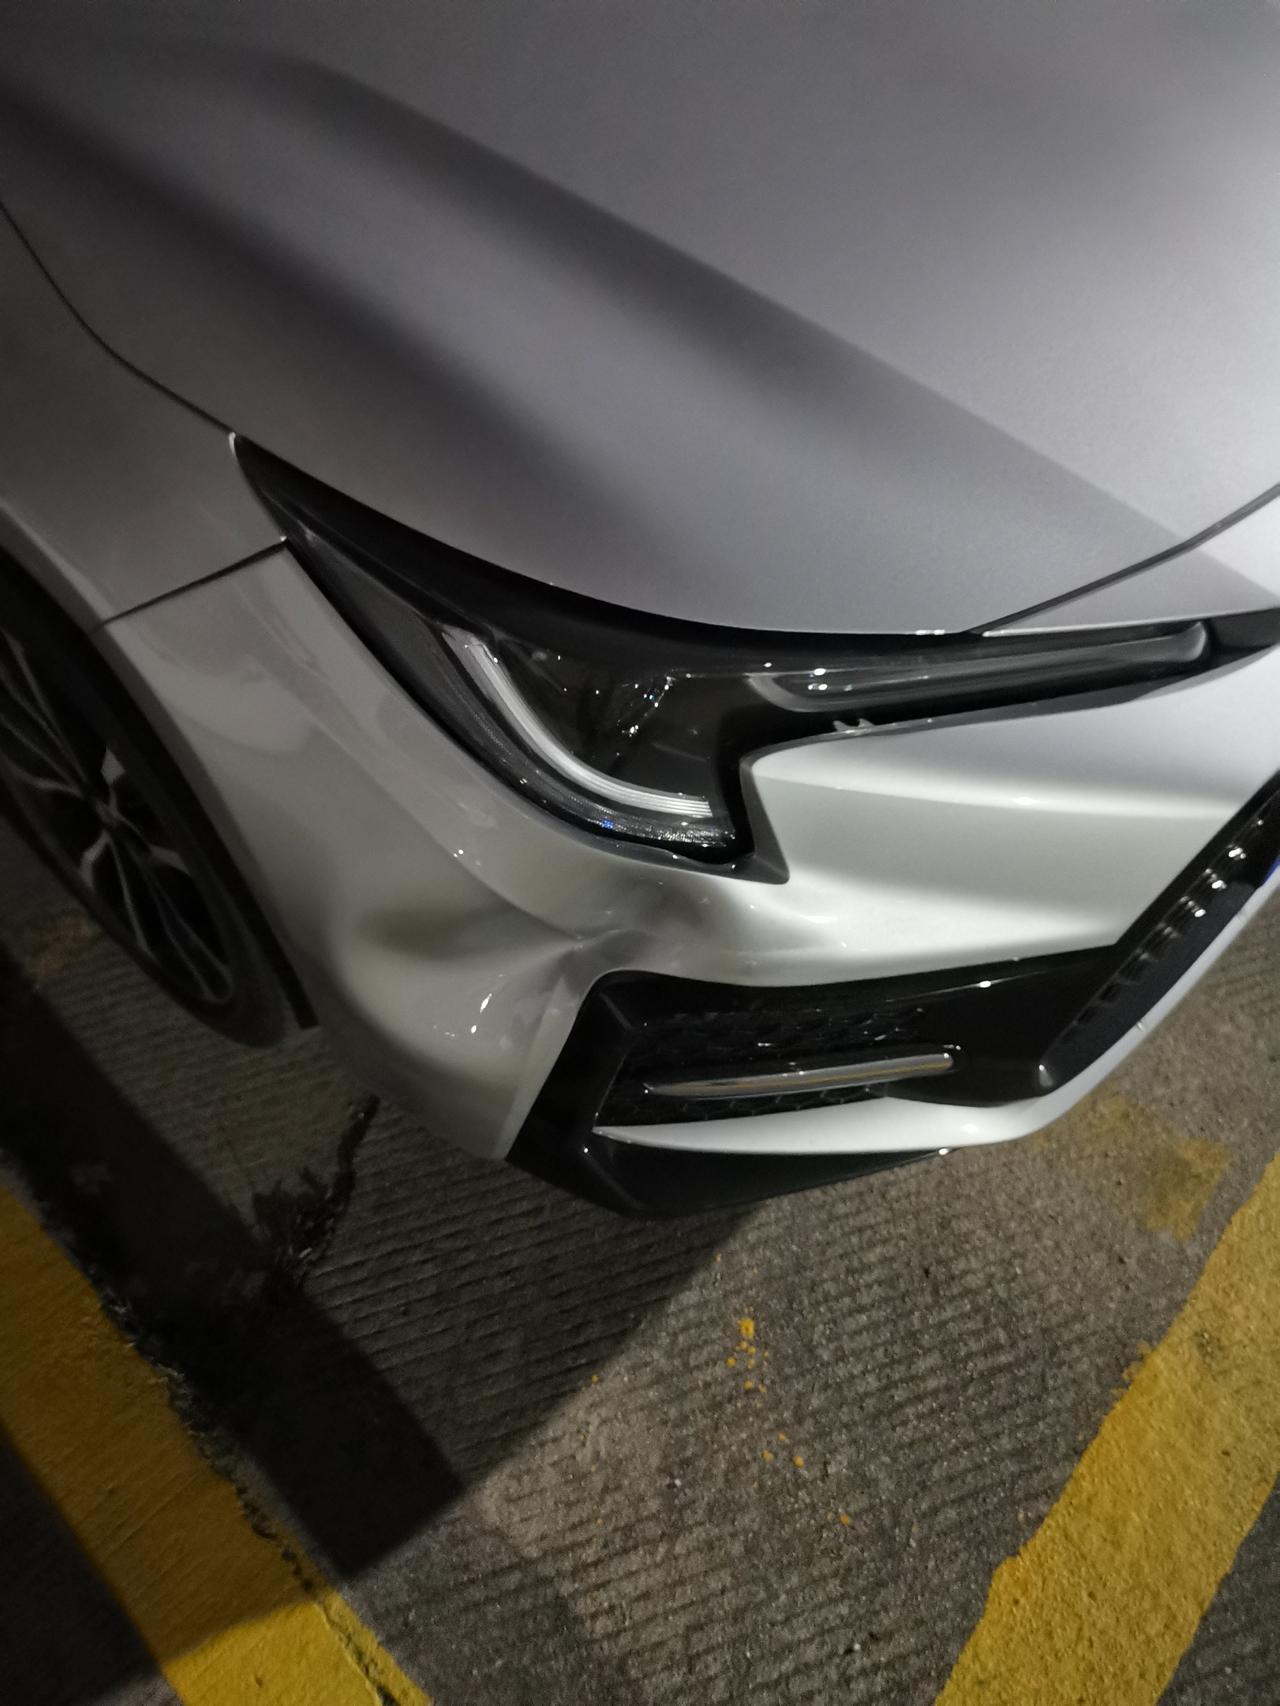 丰田雷凌 车在停车场被撞了，对方表示私了。这个能修复吗？大概要多少钱